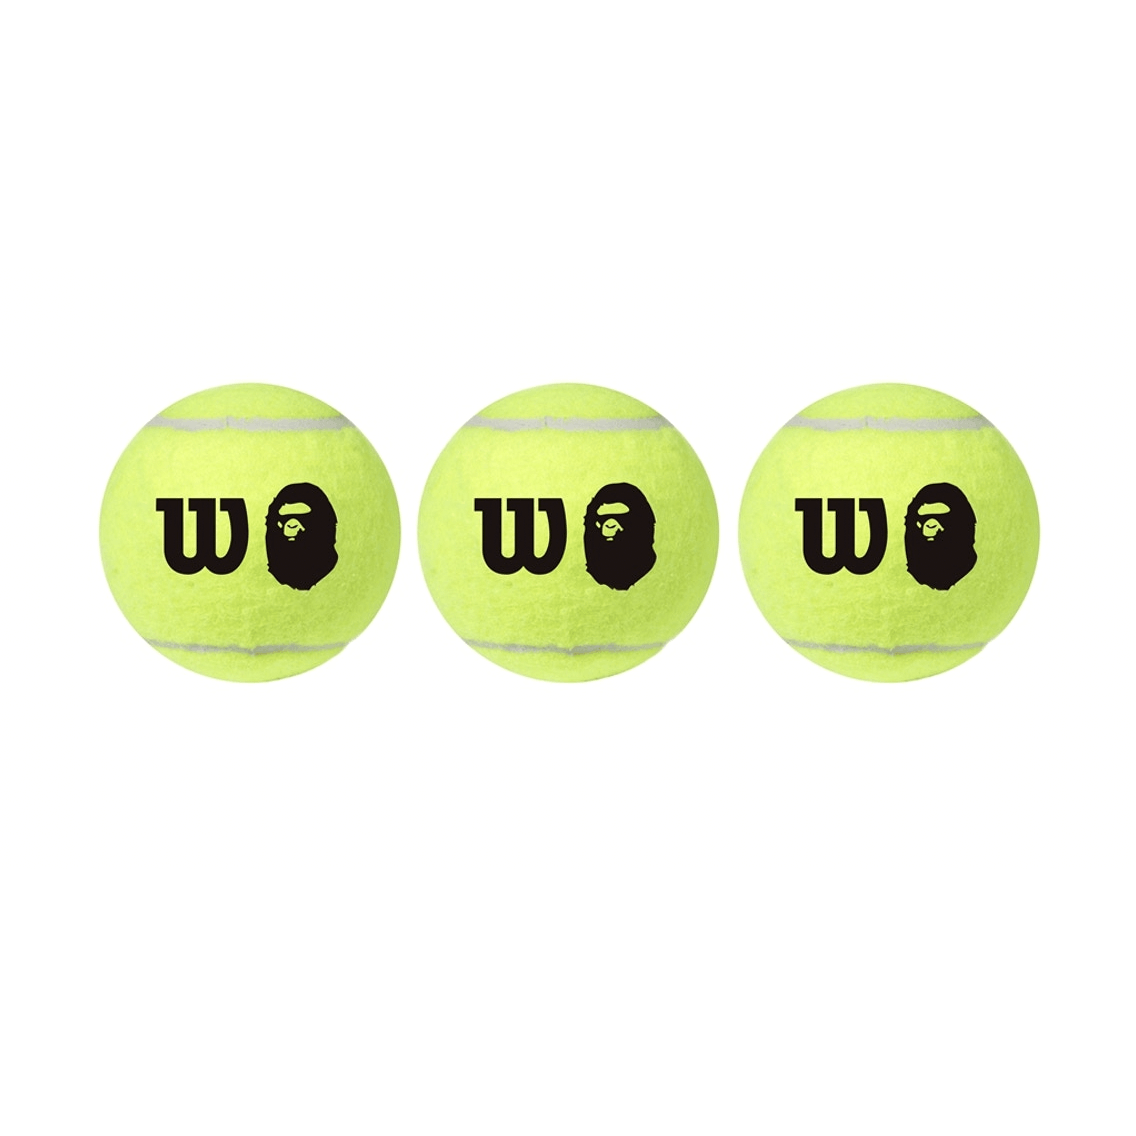 BAPE x Wilson Tennis Ball from Bape